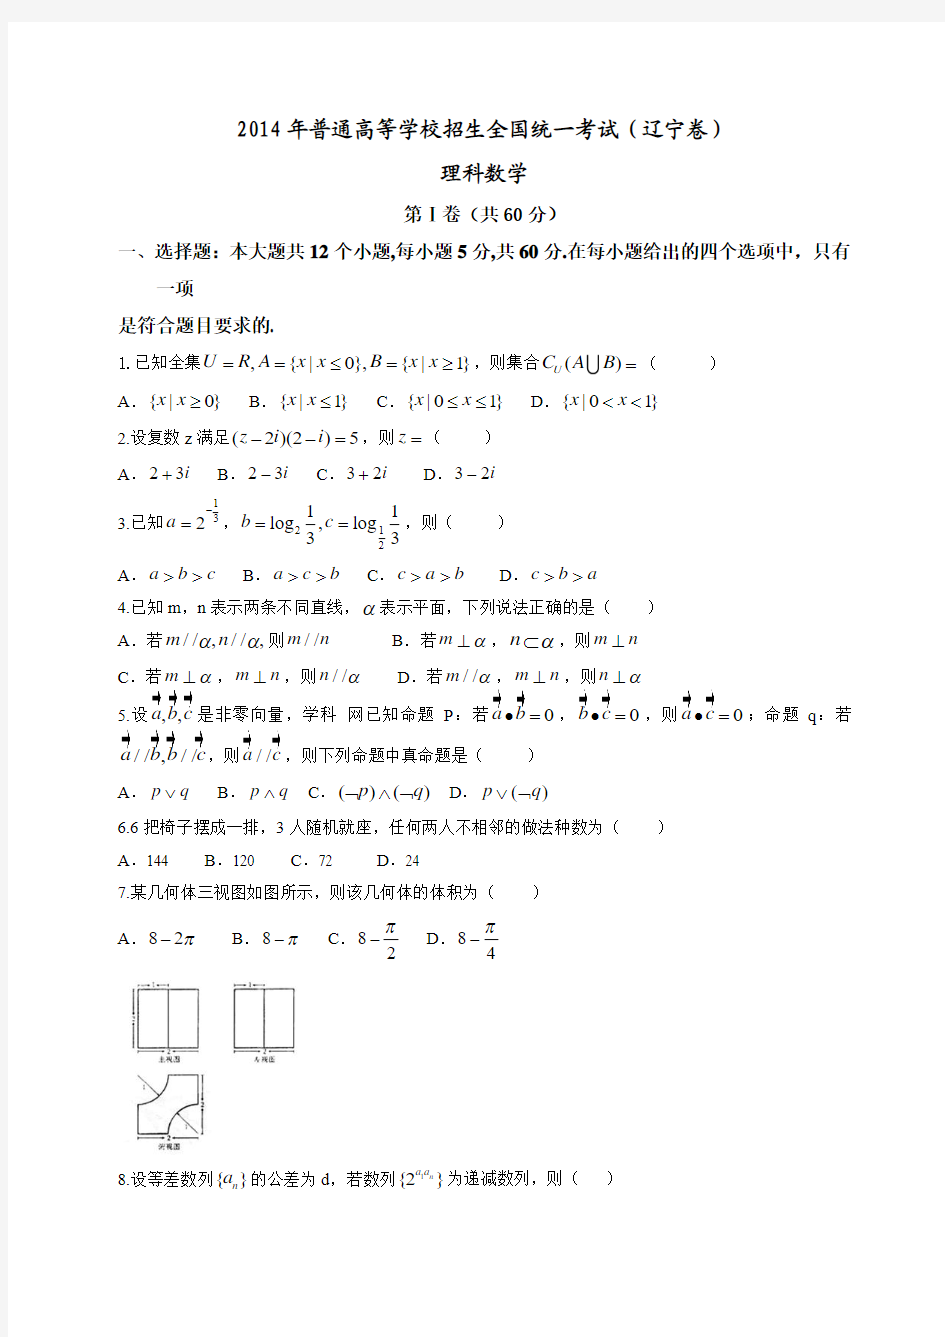 (辽宁省)2014年高考真题数学(理)试题